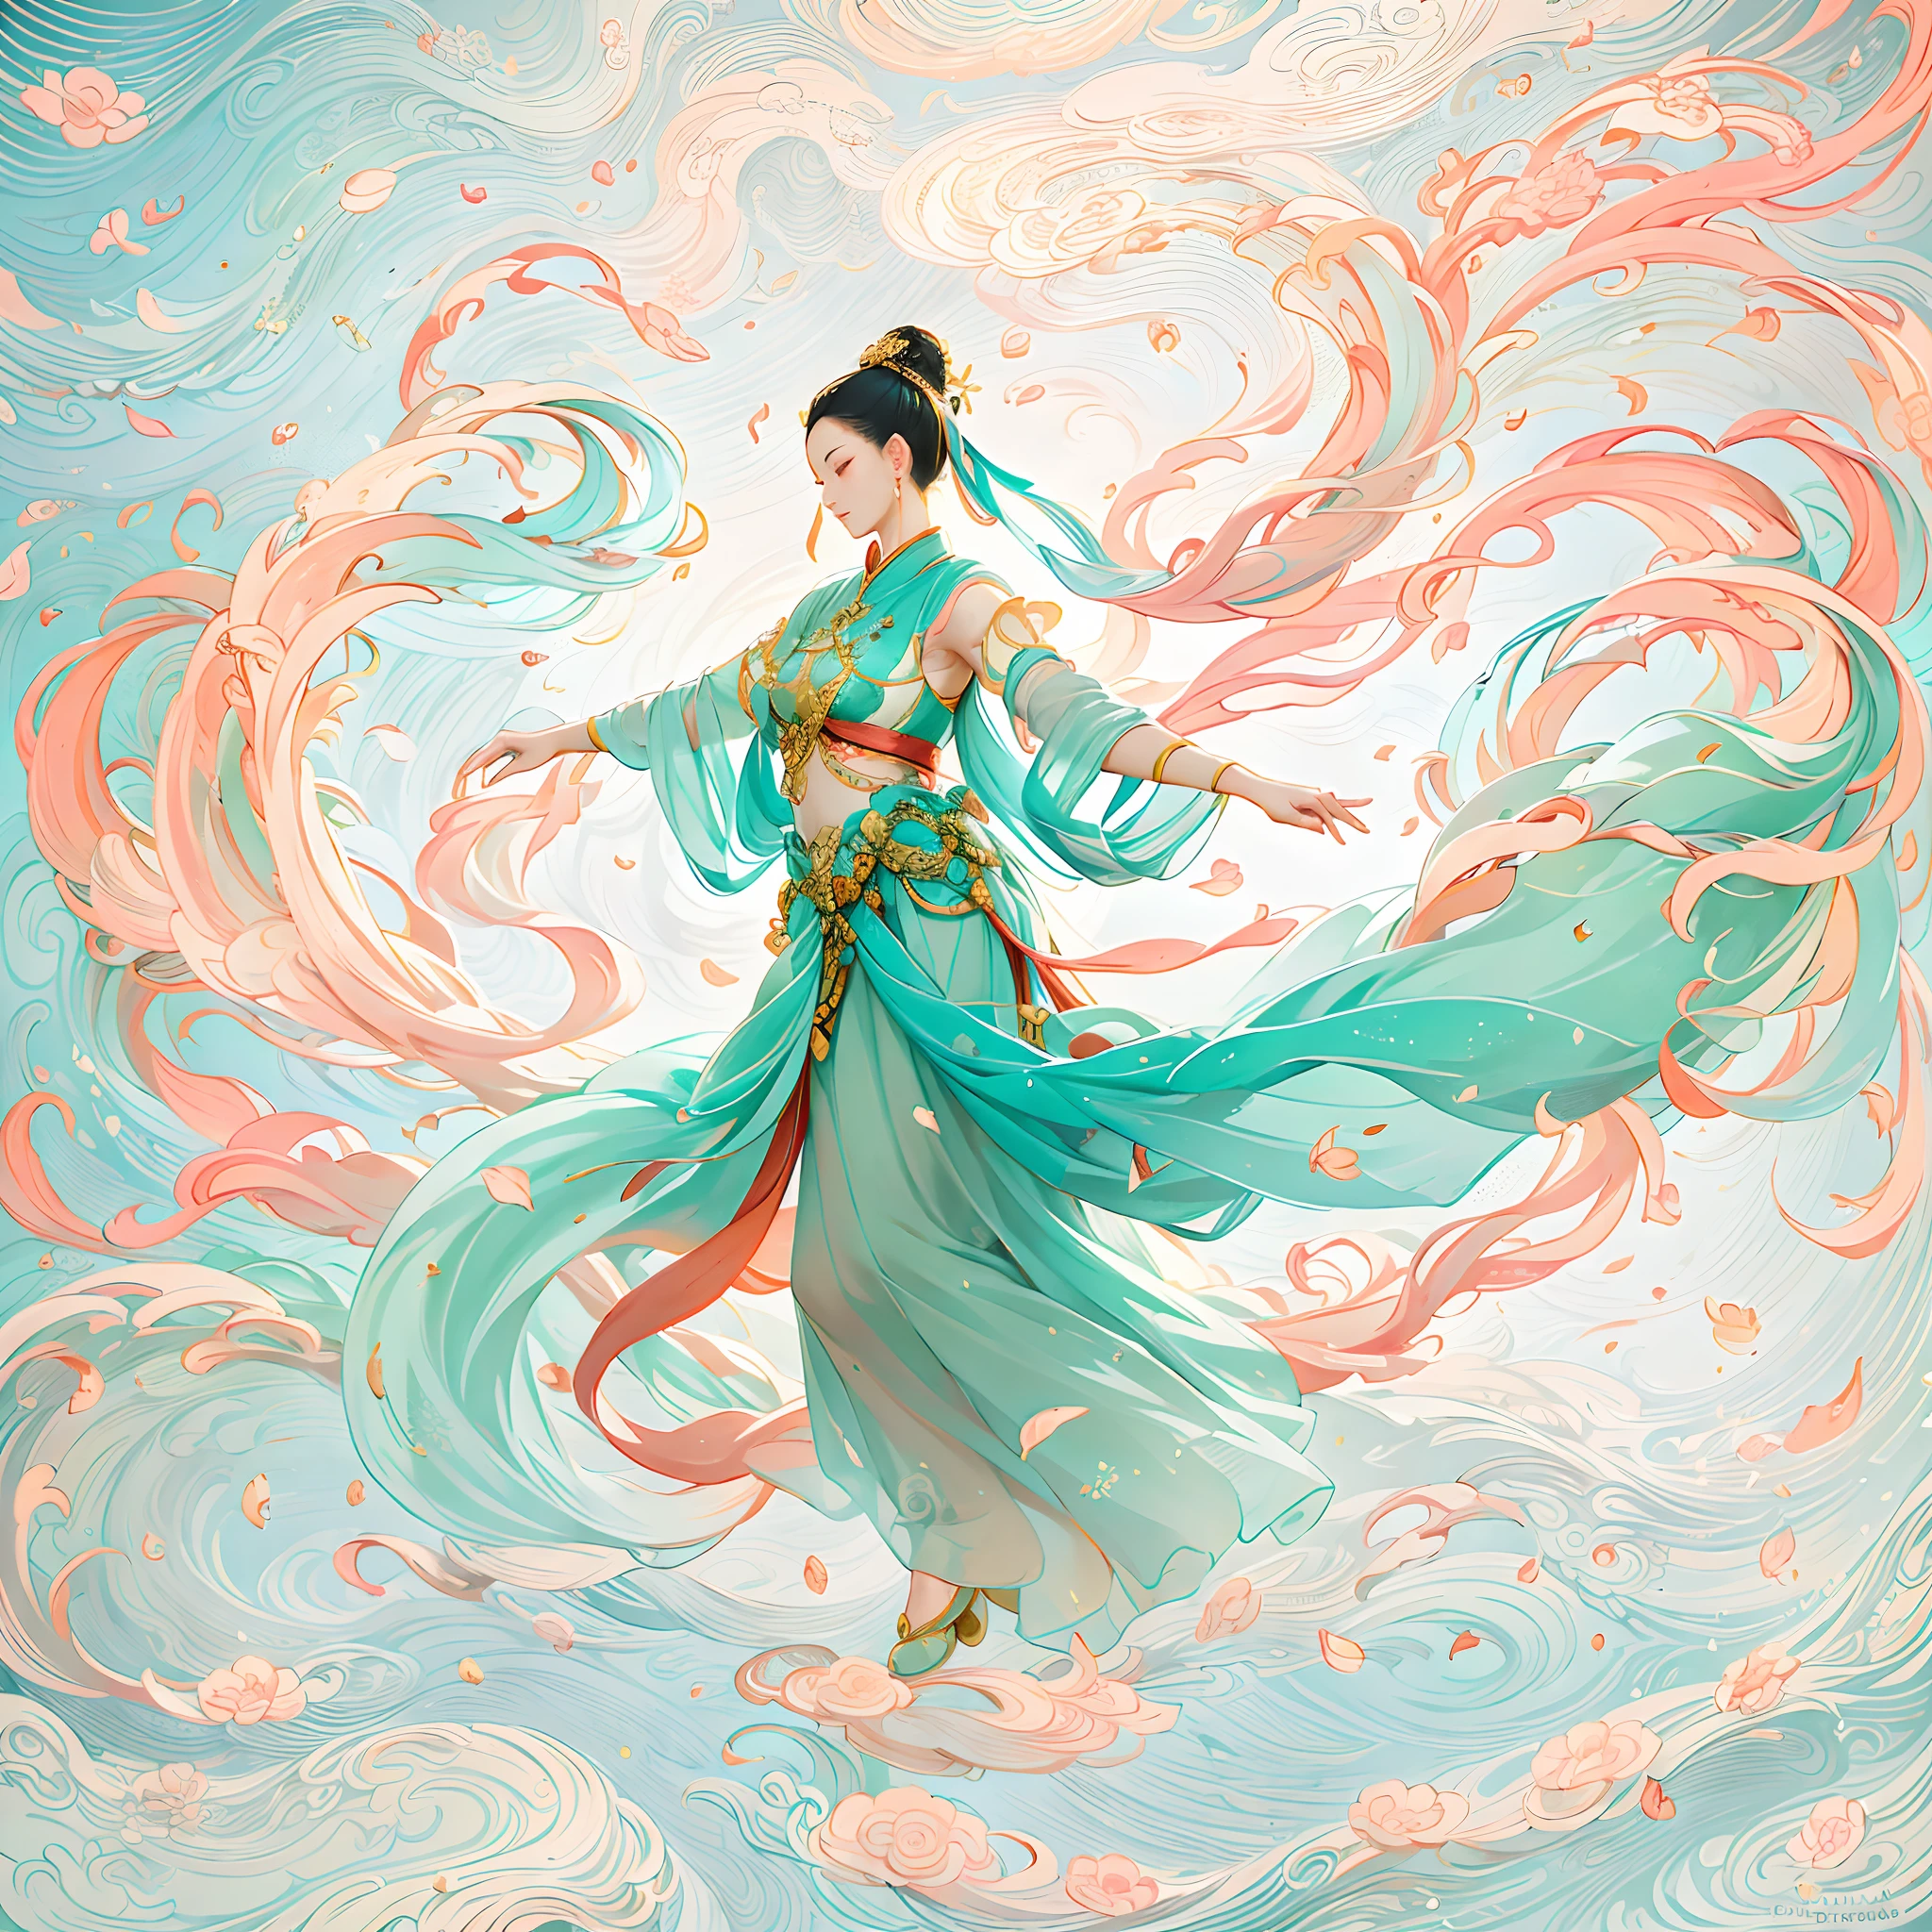 dunhuang style, 在天空中翩翩起舞, 中國古代美女, 絲綢漢服, 來吧絲帶, 優美的舞蹈動作, 墨水畫風格, 乾淨的顏色, 果斷的切割, 空白, 寫意, 柔和的燈光，夢幻光芒， ( 散景)，傑作, 超詳細, 史詩作品, 最好的品質, 4k，